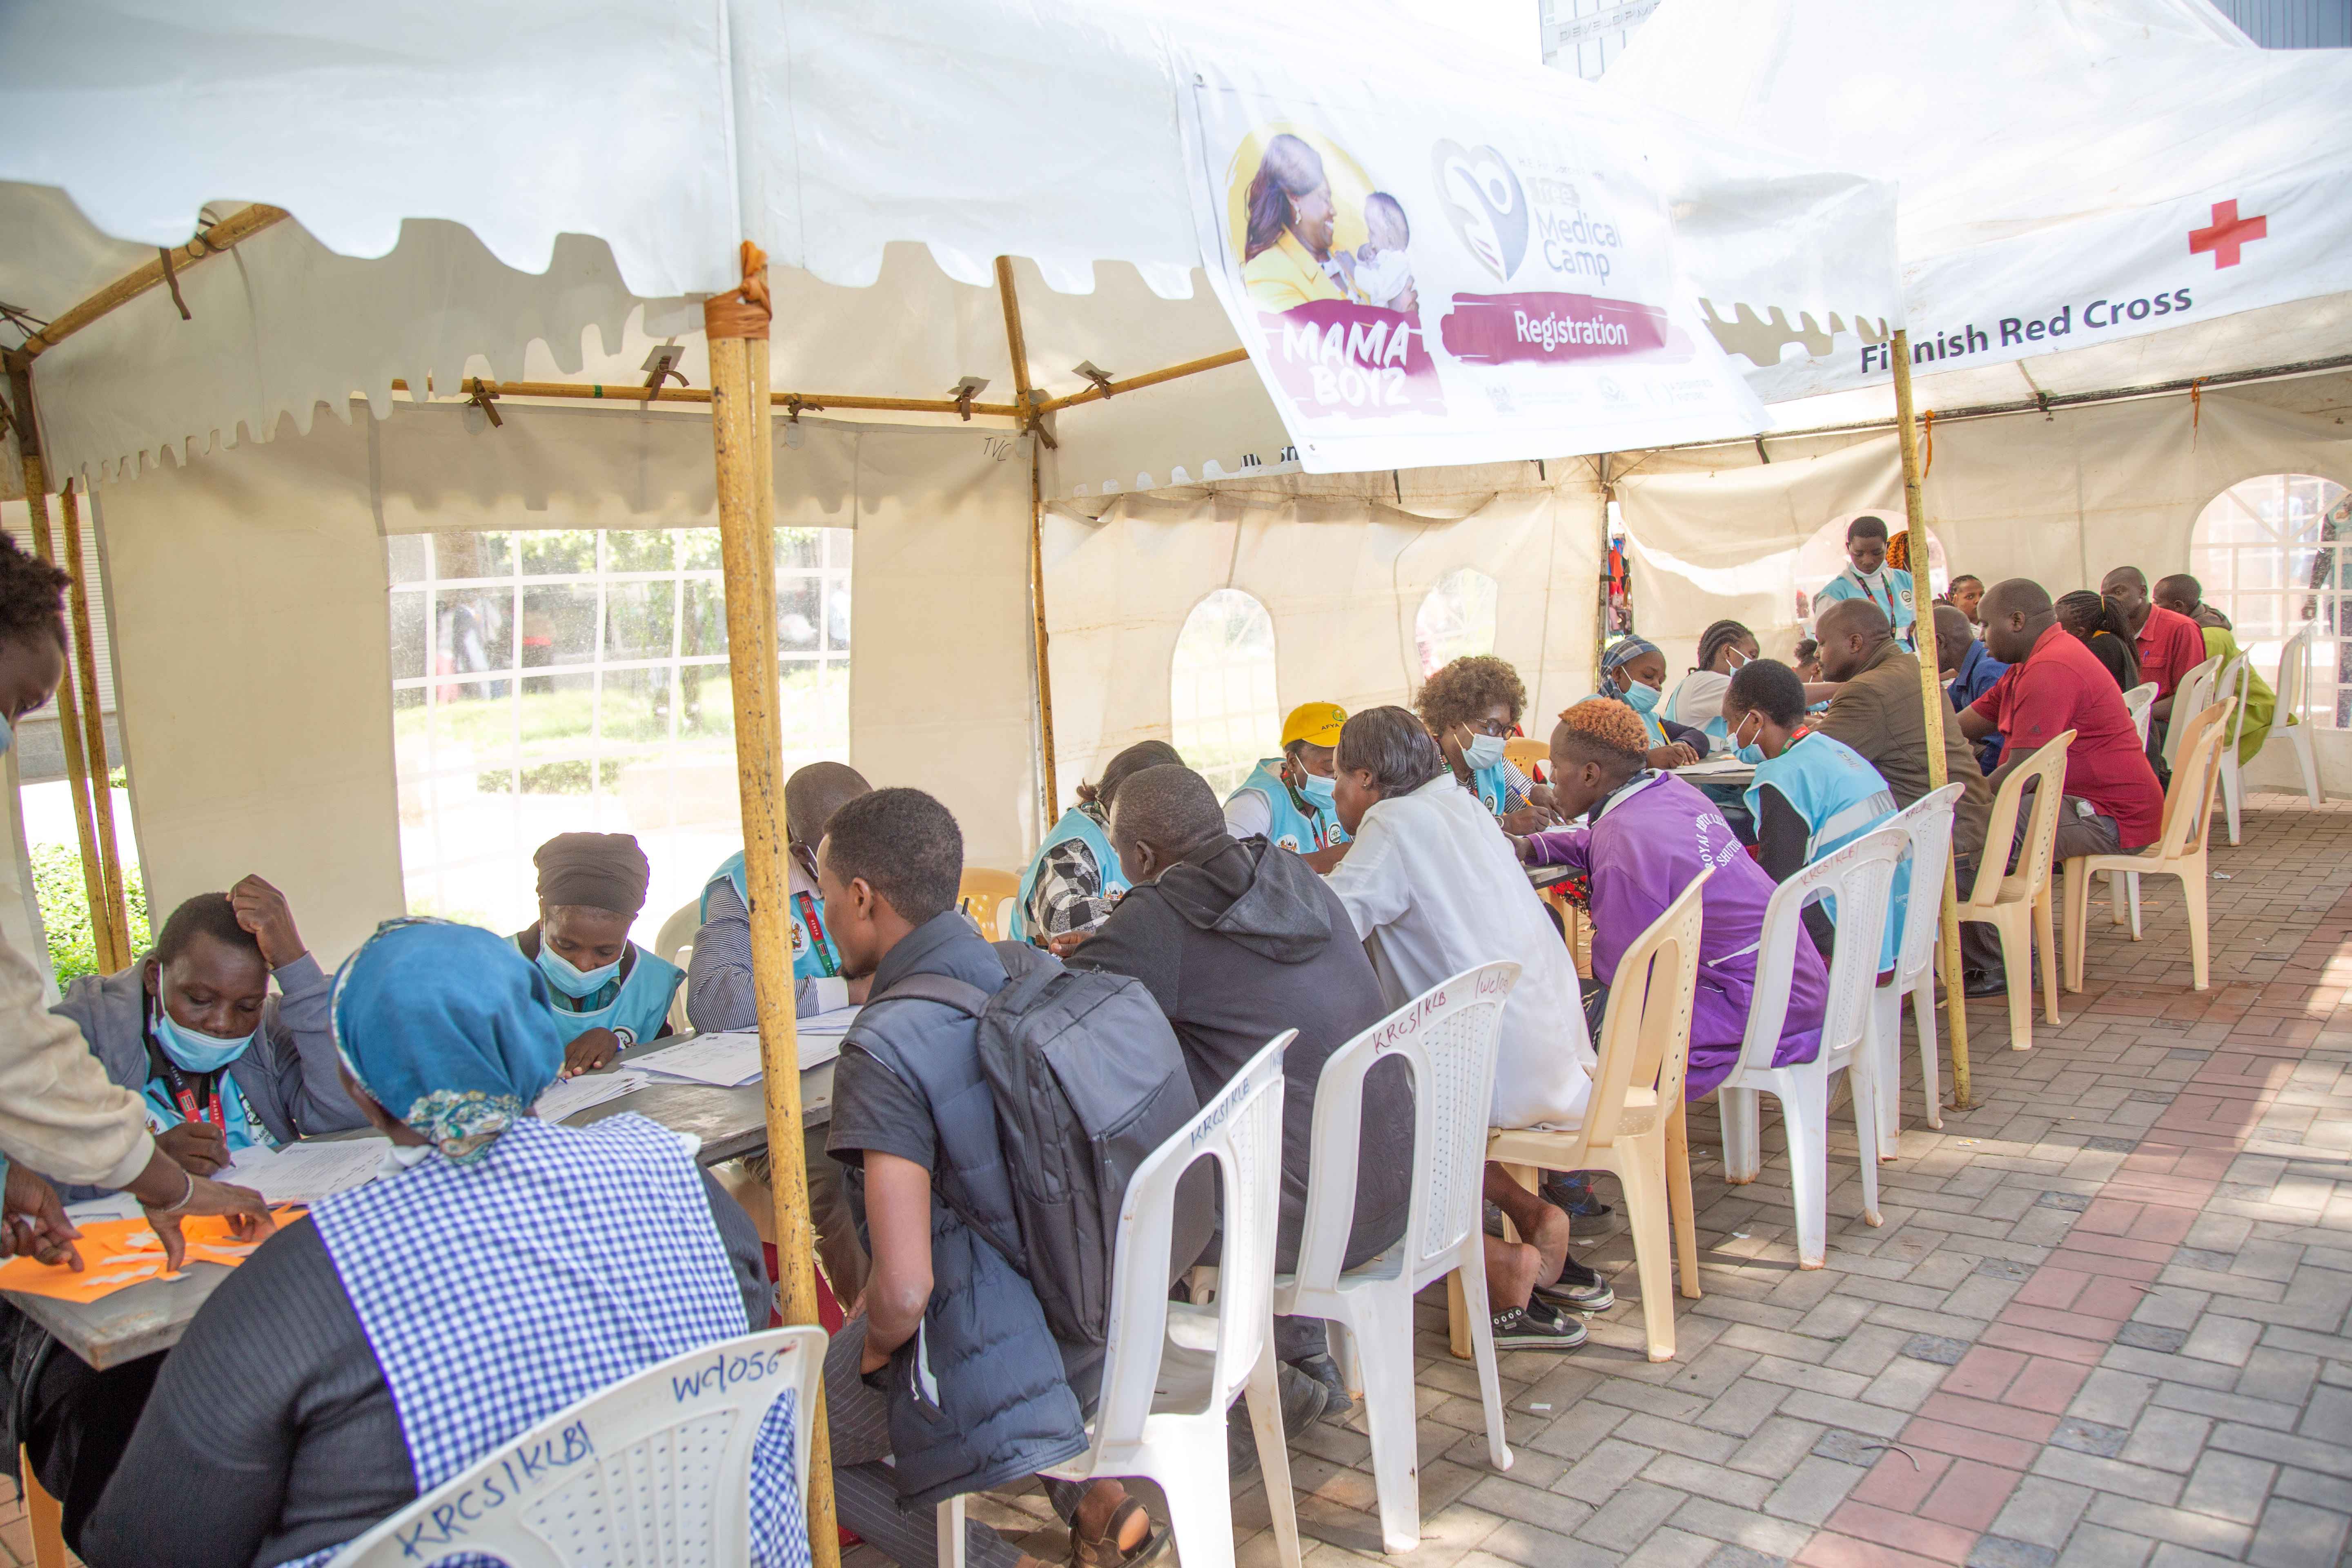 File Image of a two-day medical camp held at the Aga Khan Walk, Nairobi-CBD.